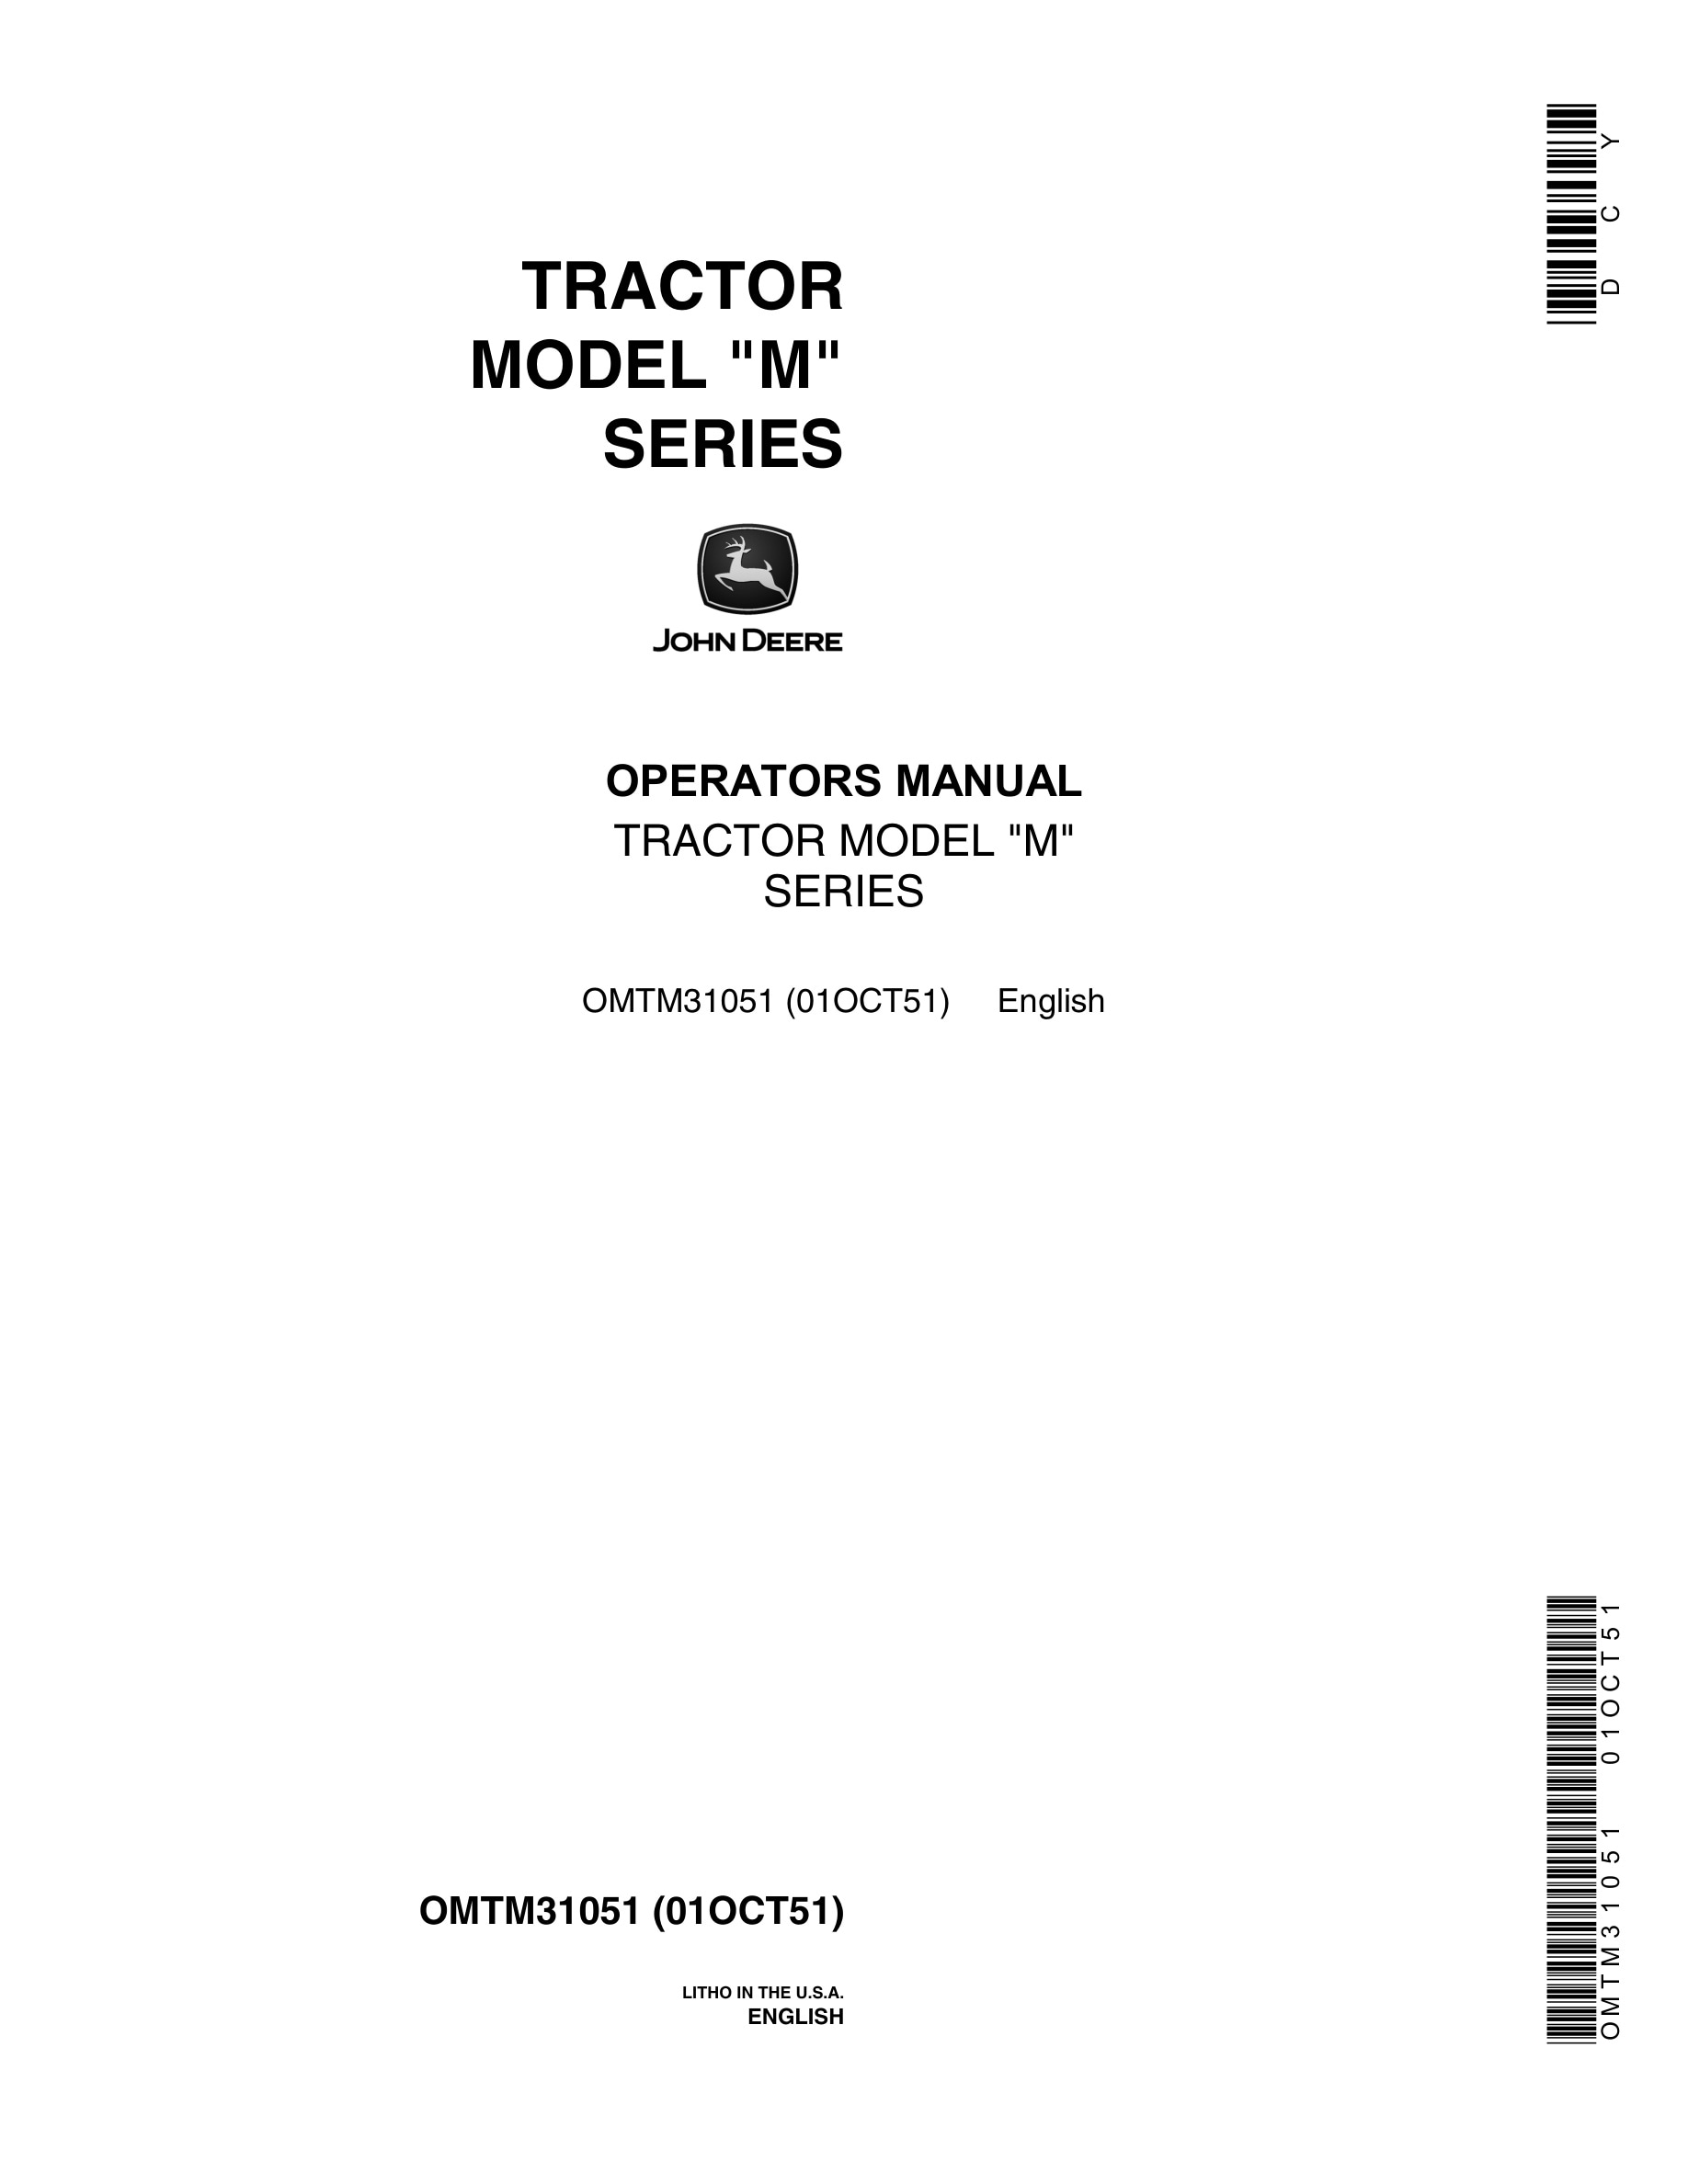 John Deere Model M Tractor Operator Manual OMTM31051-1